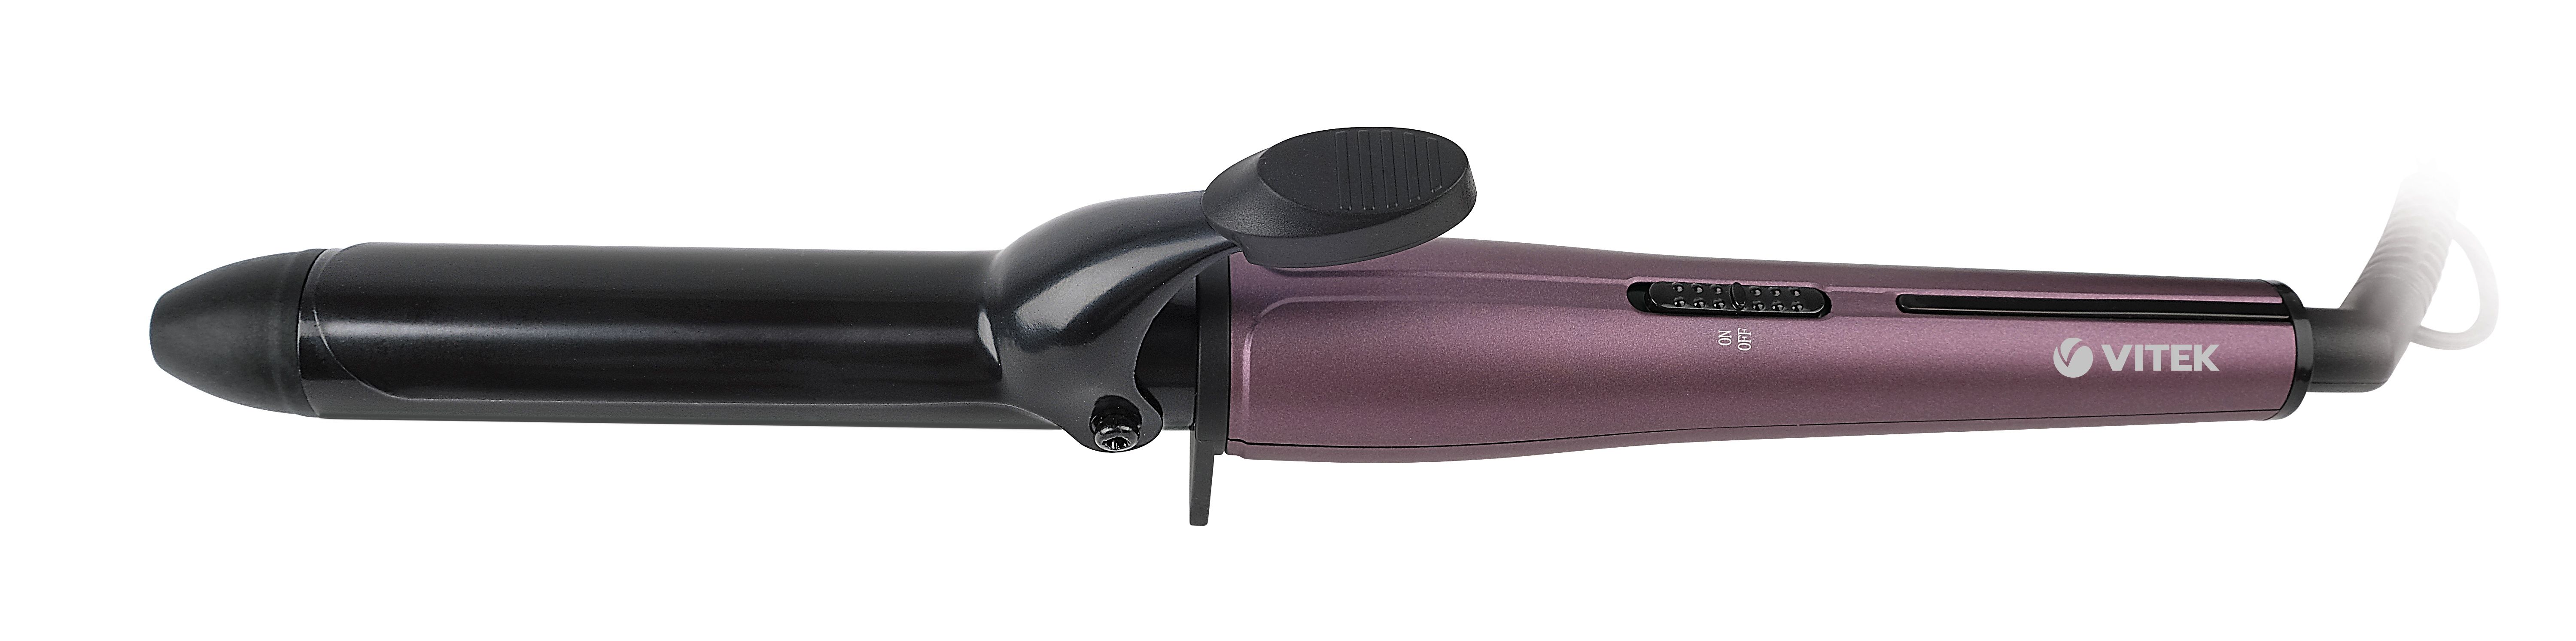 щипцы для завивки rowenta curls forever cf3112f0 black Электрошипцы Vitek VT-8294 Purple/Black